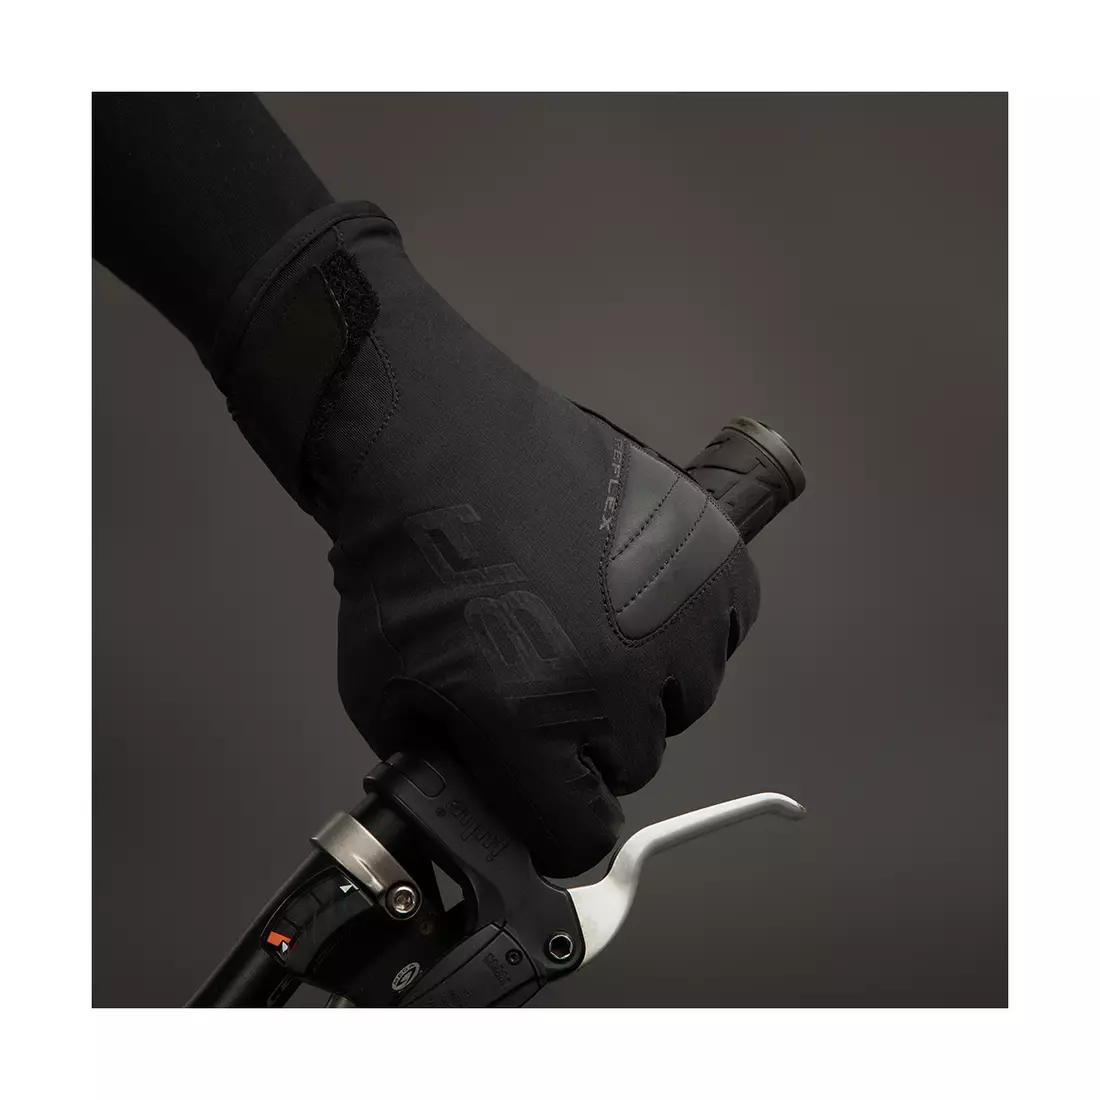 CHIBA BIOXCELL WARM WINTER ciepłe zimowe rękawiczki rowerowe Primaloft, czarne 3160020 